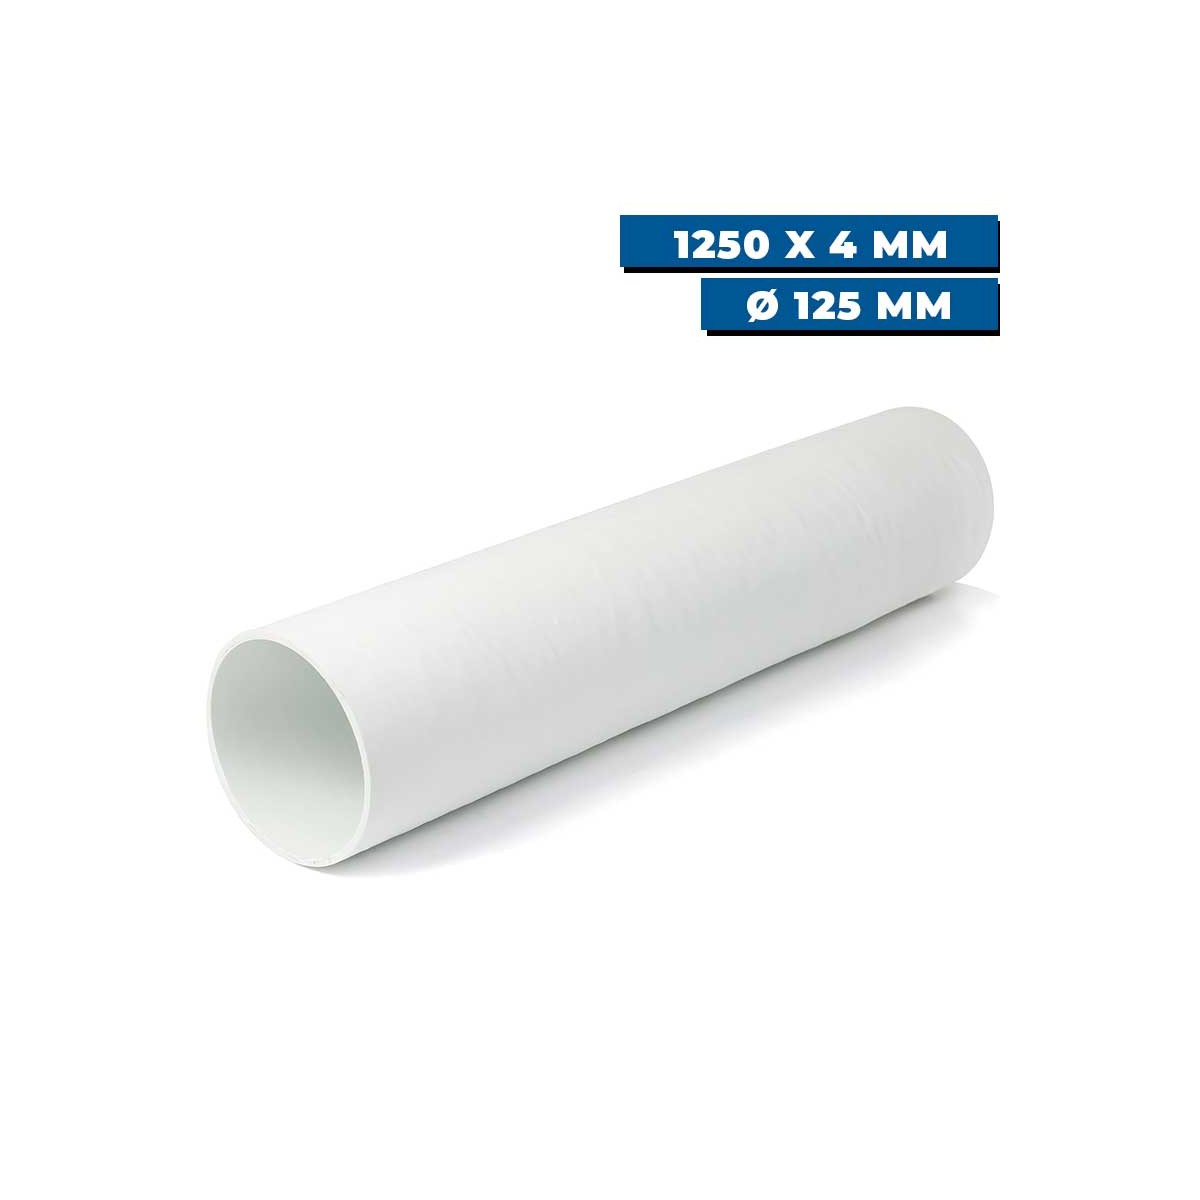 Tunnel polyester pour propulseur Ø 125 mm Sleipner 1250 x 4 mm